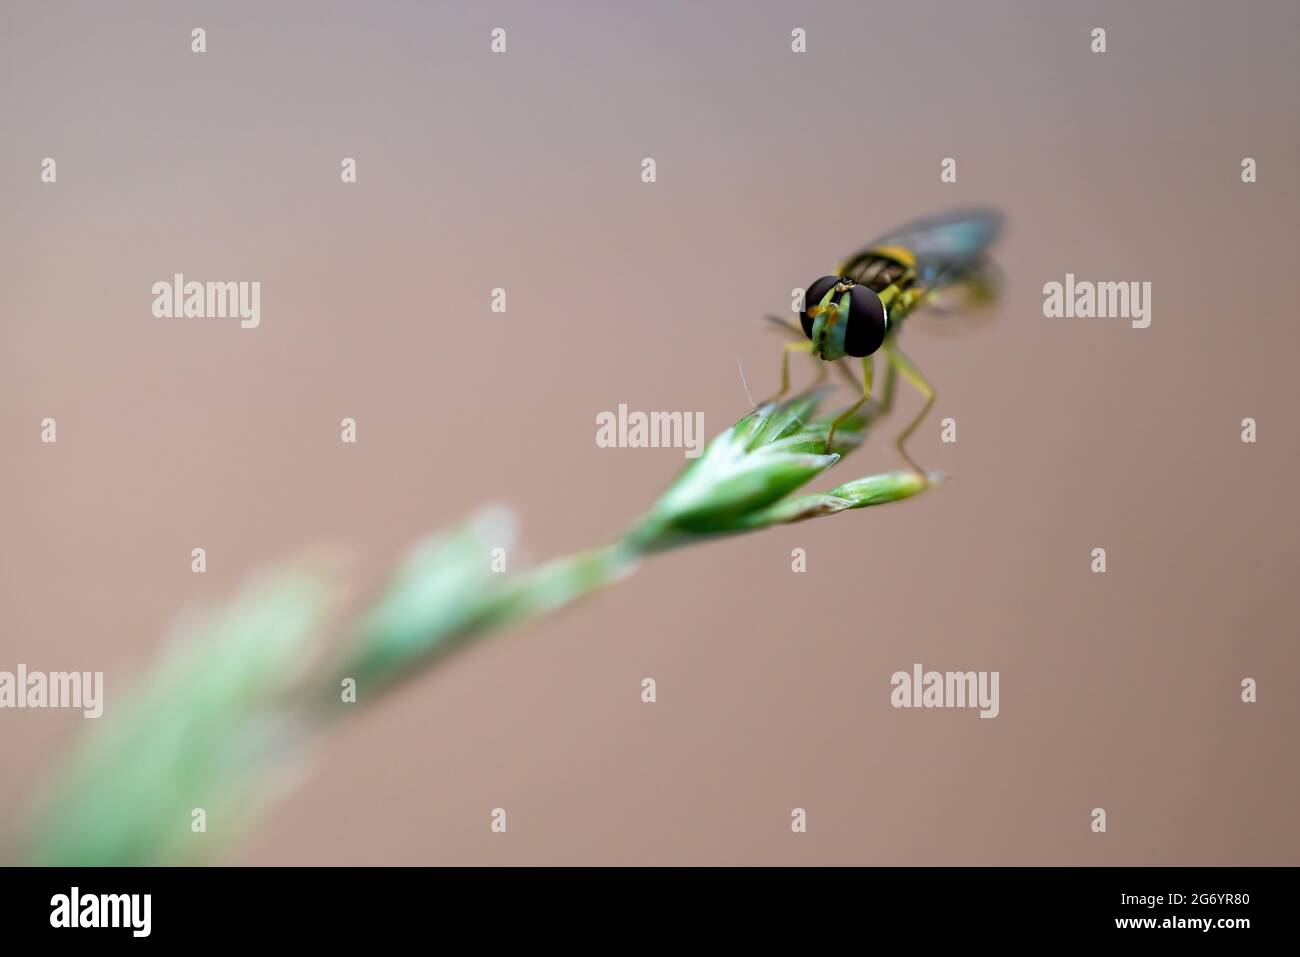 Makroaufnahme der Hoverfly, auch bekannt als Blumenfliege oder Syrphidae-Fliege (Familie Syrphidae), die auf einem grünen Grasstrand thront. Isoliert auf beigem Hintergrund. Stockfoto